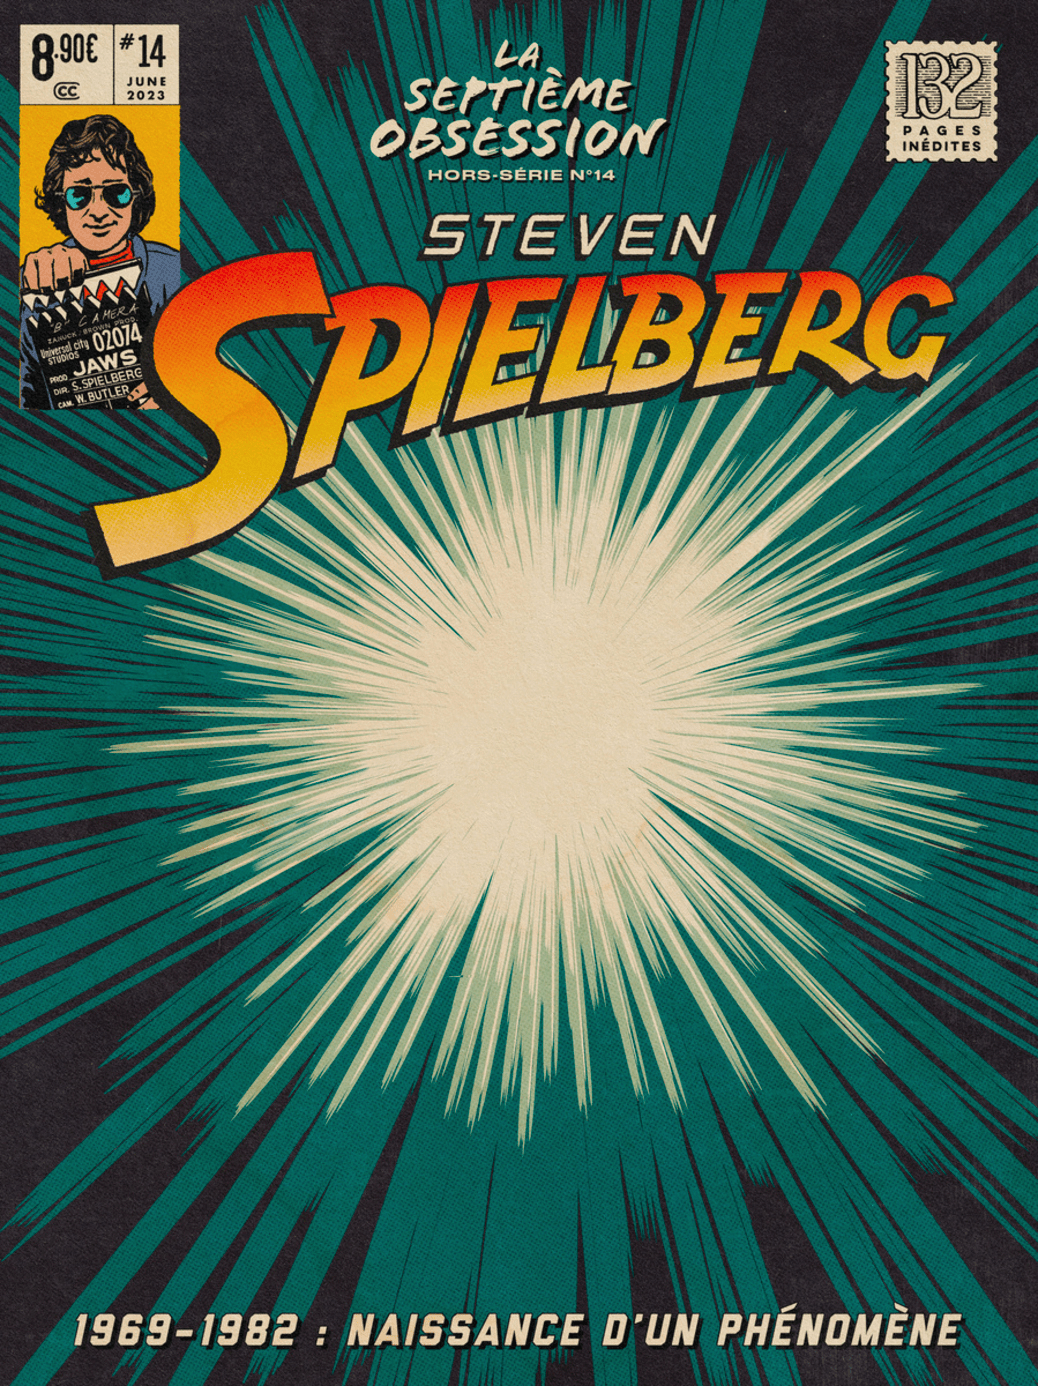 Hors-série N°14 — Steven Spielberg (partie 1)